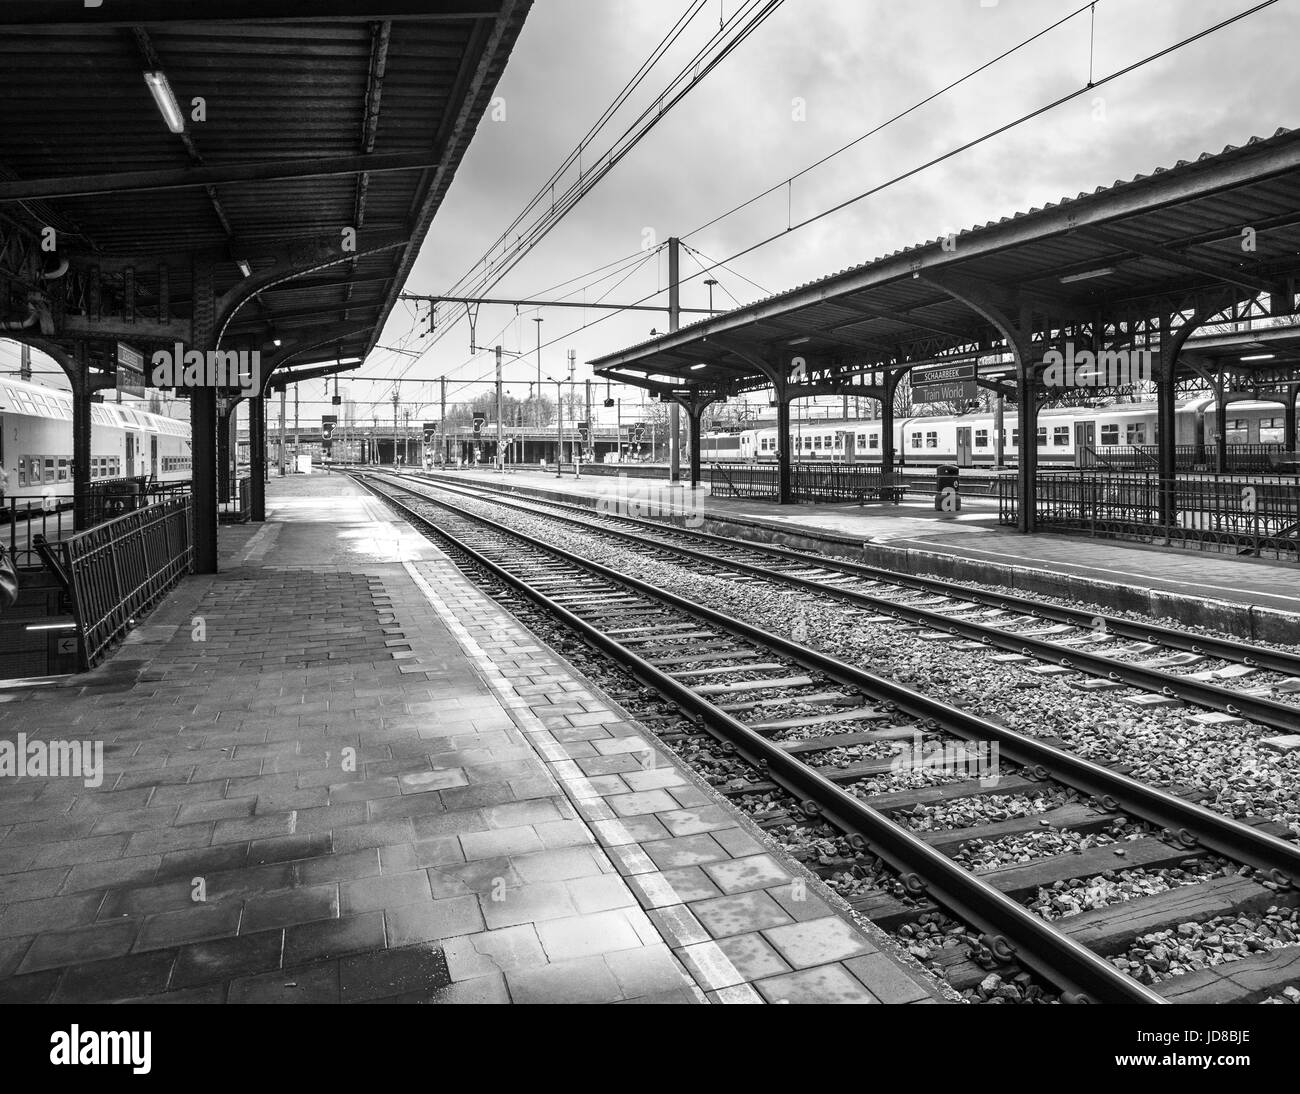 La gare vide avec la plate-forme des voies ferrées, noir et blanc, Belgique. couleur photo Transport ferroviaire Banque D'Images